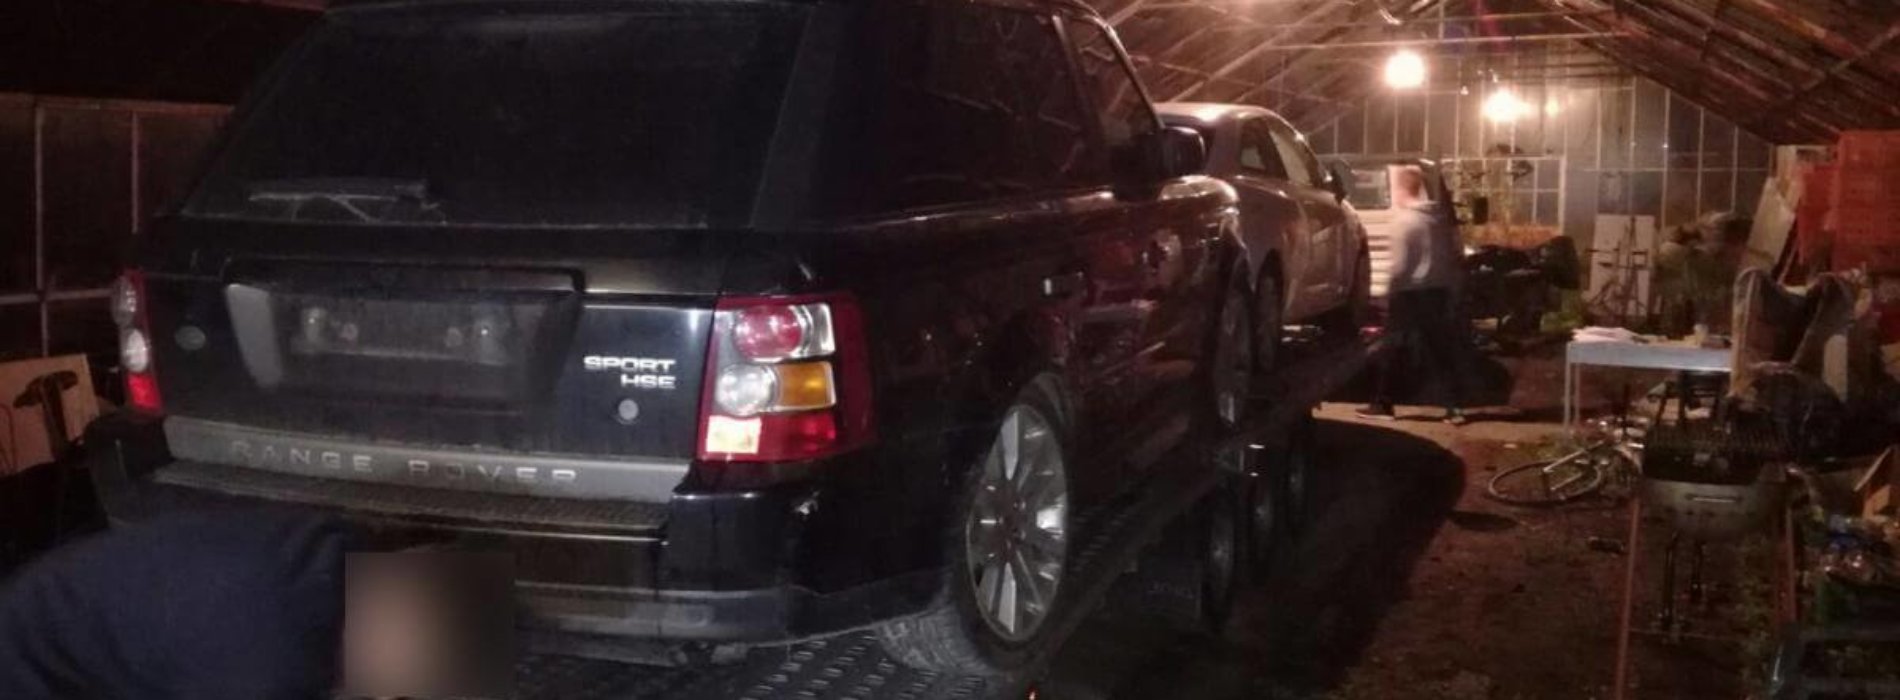 Krakowscy policjanci zlikwidowali dziuplę samochodową